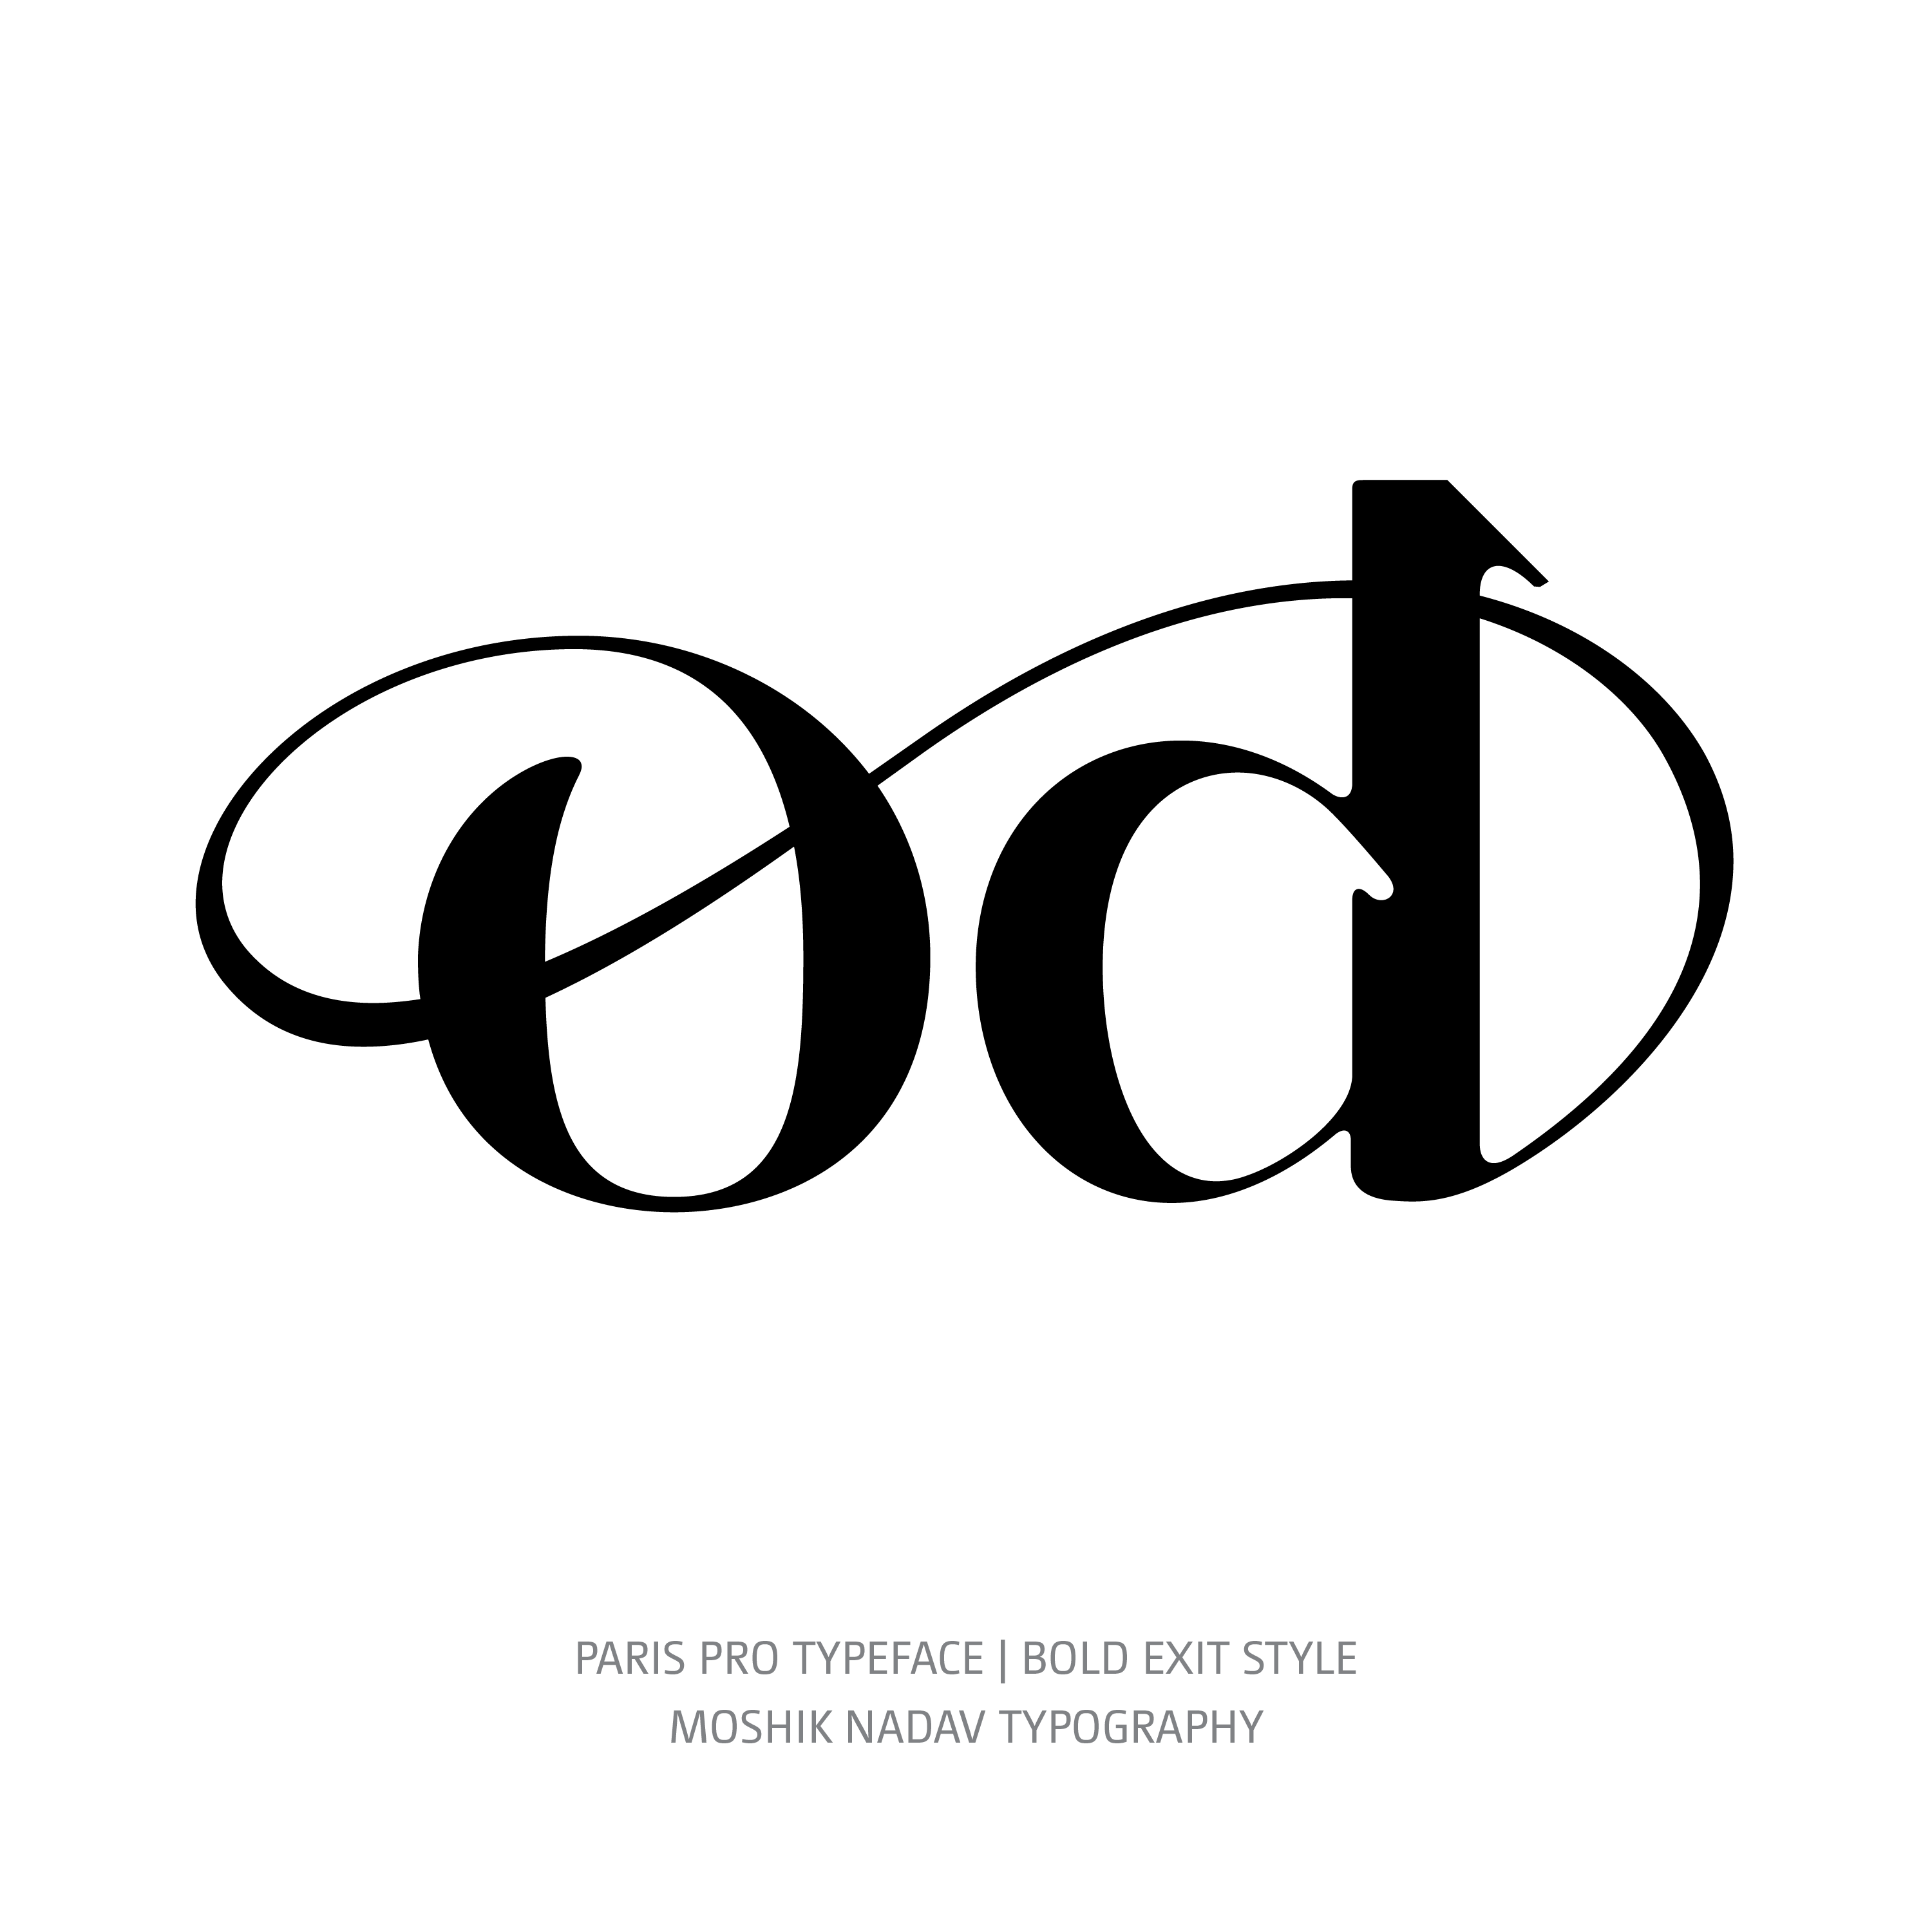 Paris Pro Typeface Bold Exit od ligature